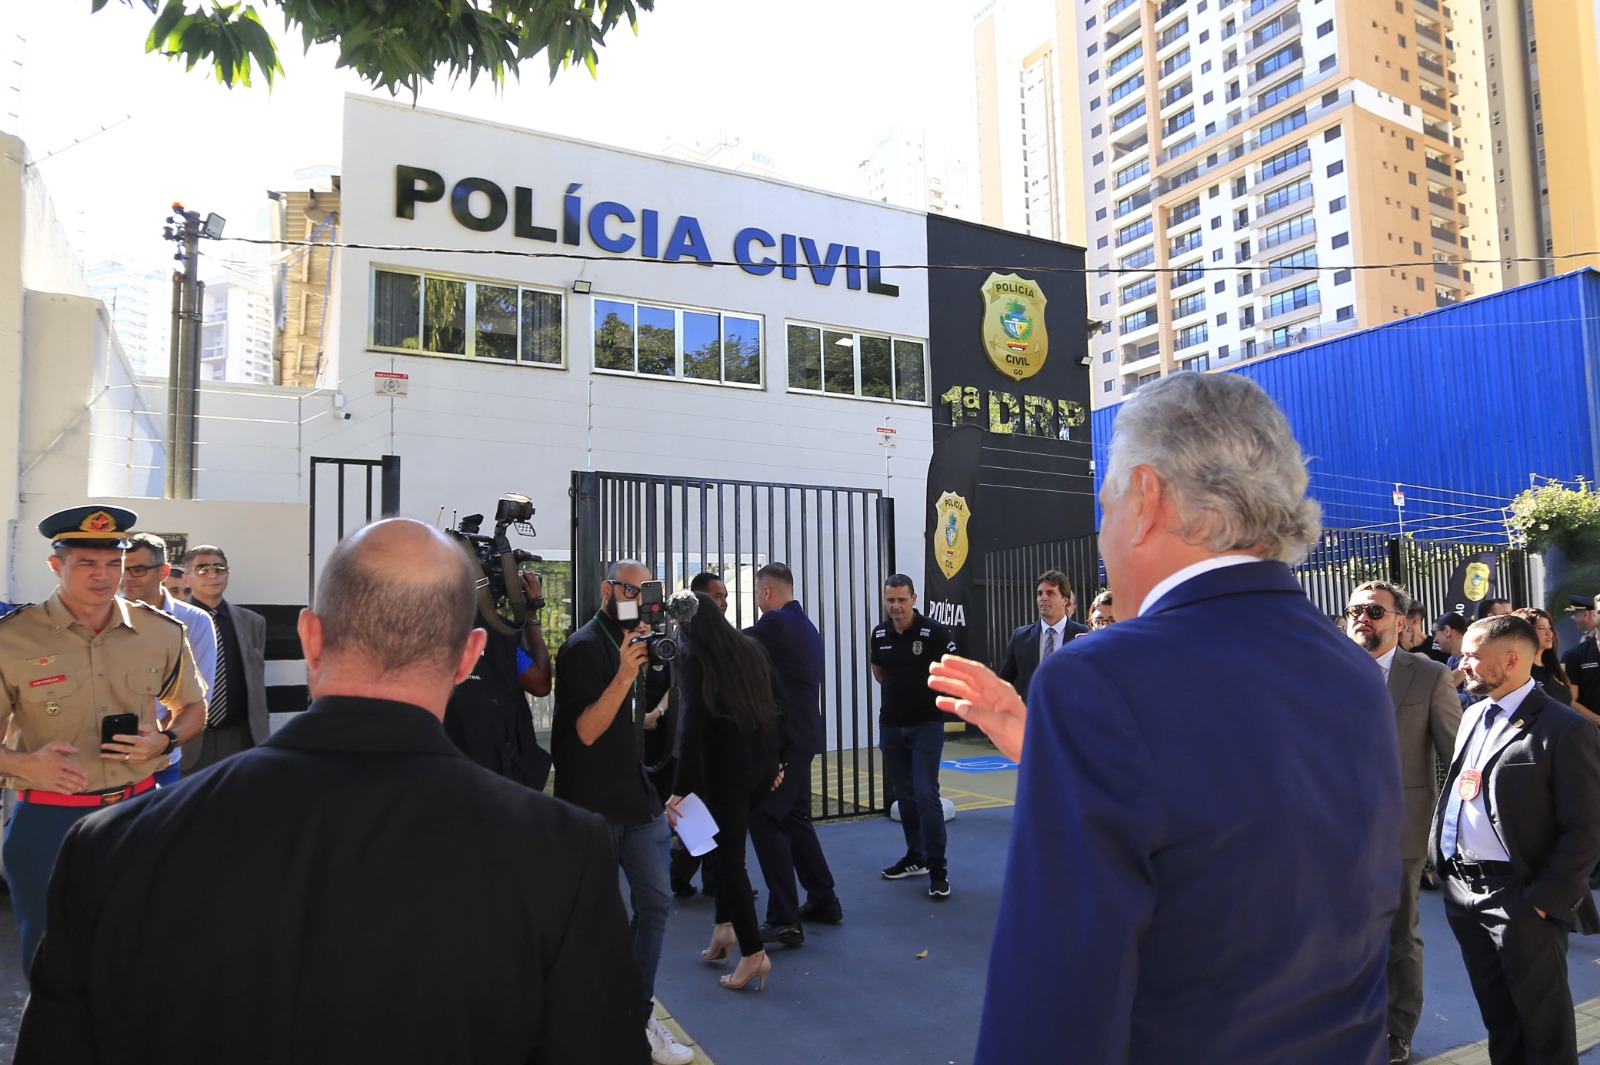 Casa nova: maior delegacia regional de Polícia Civil de Goiás passa a funcionar em imóvel próprio, no setor Marista, em Goiânia